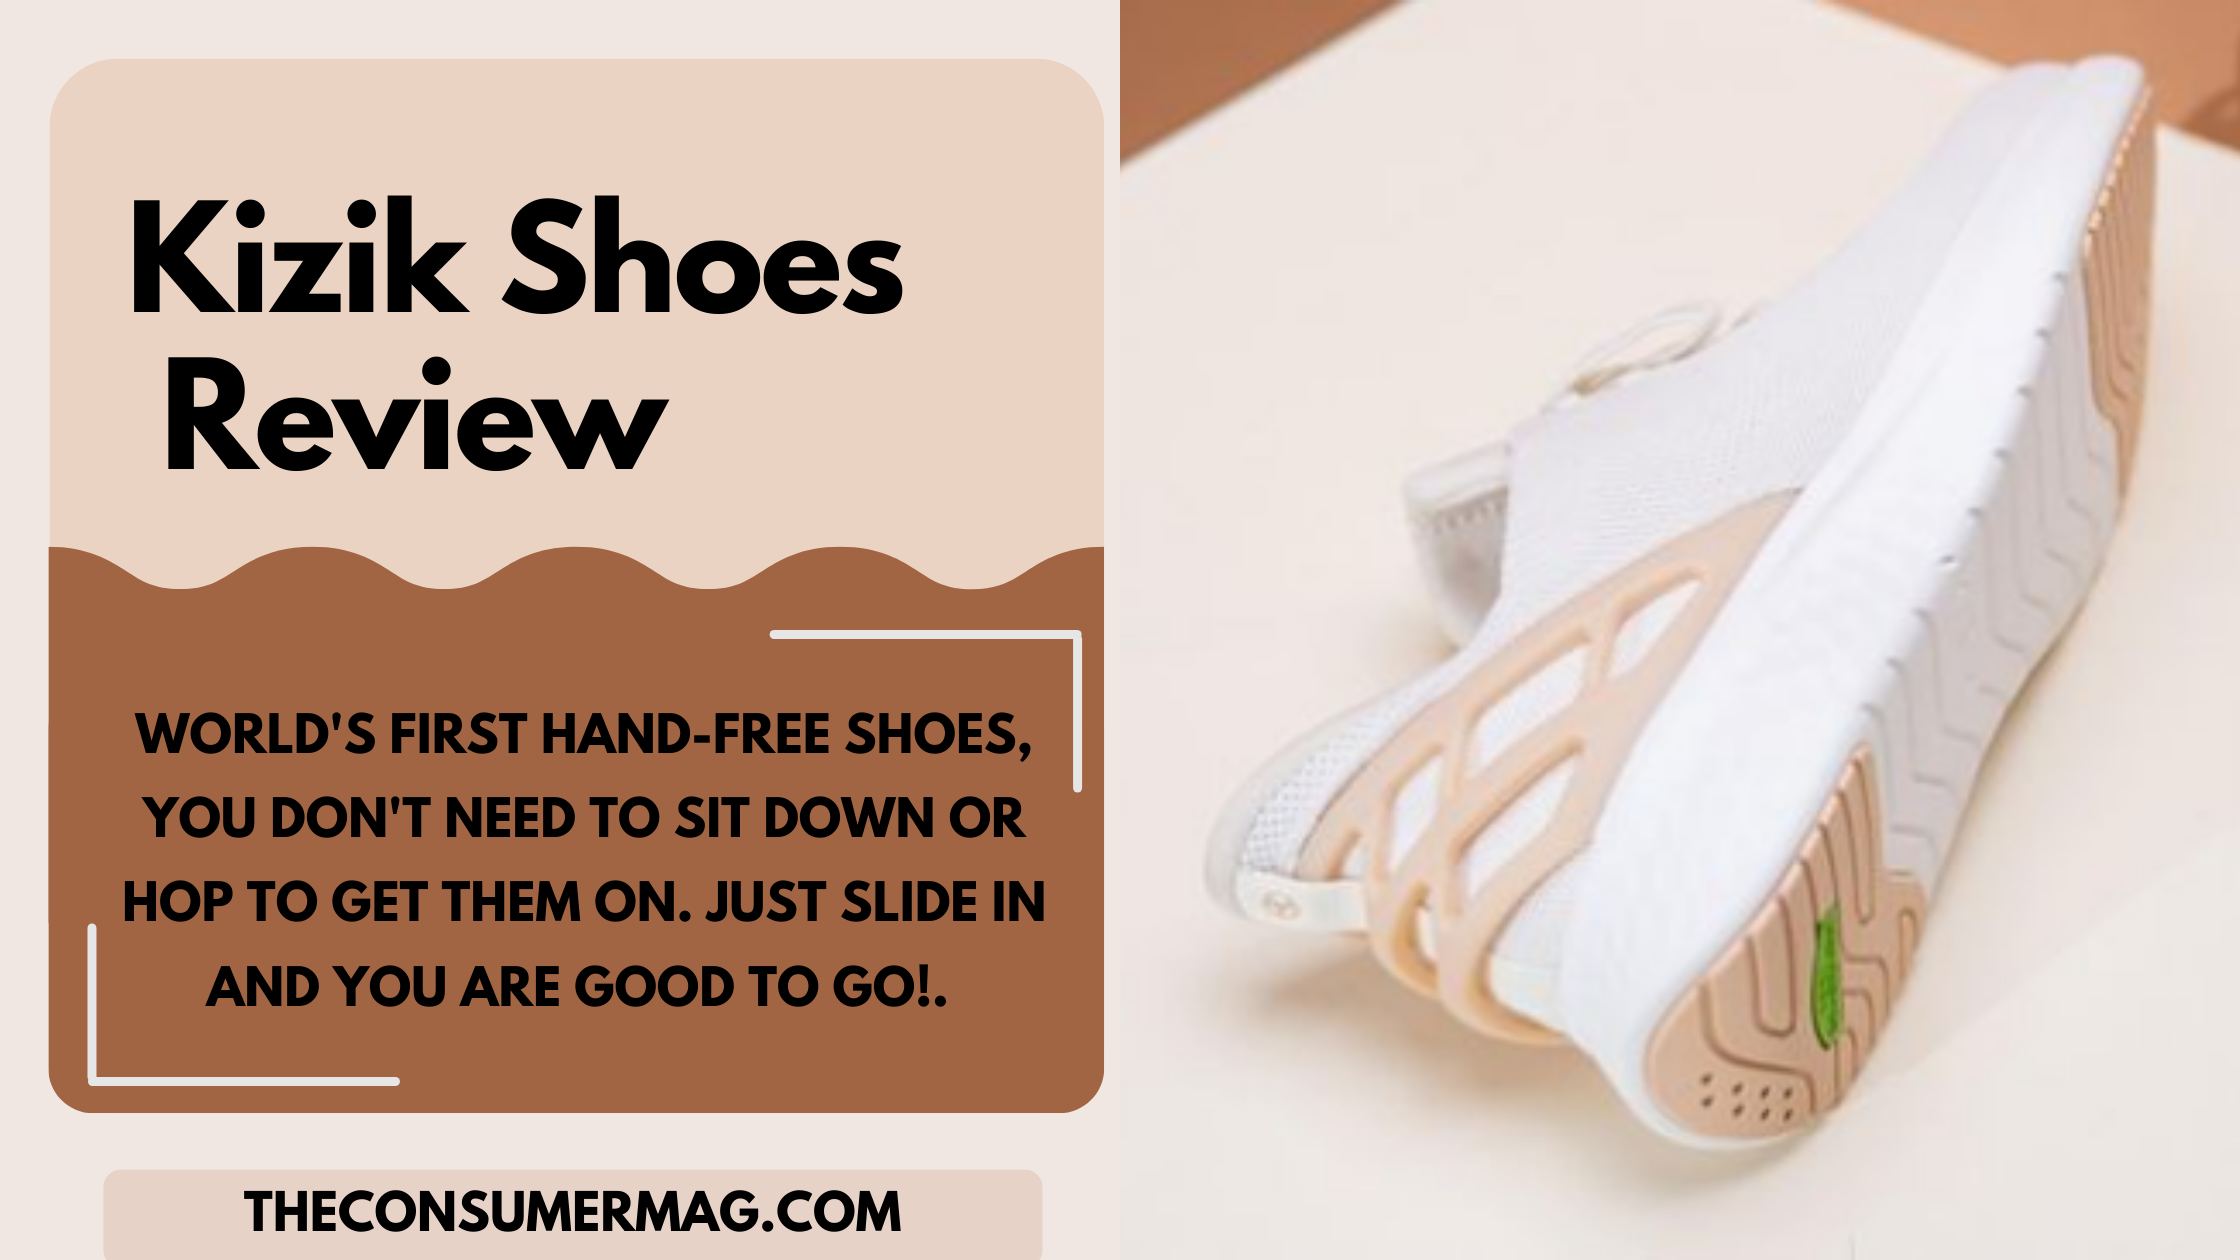 Kizik Shoes Reviews | Read All Kizik Shoes Reviews